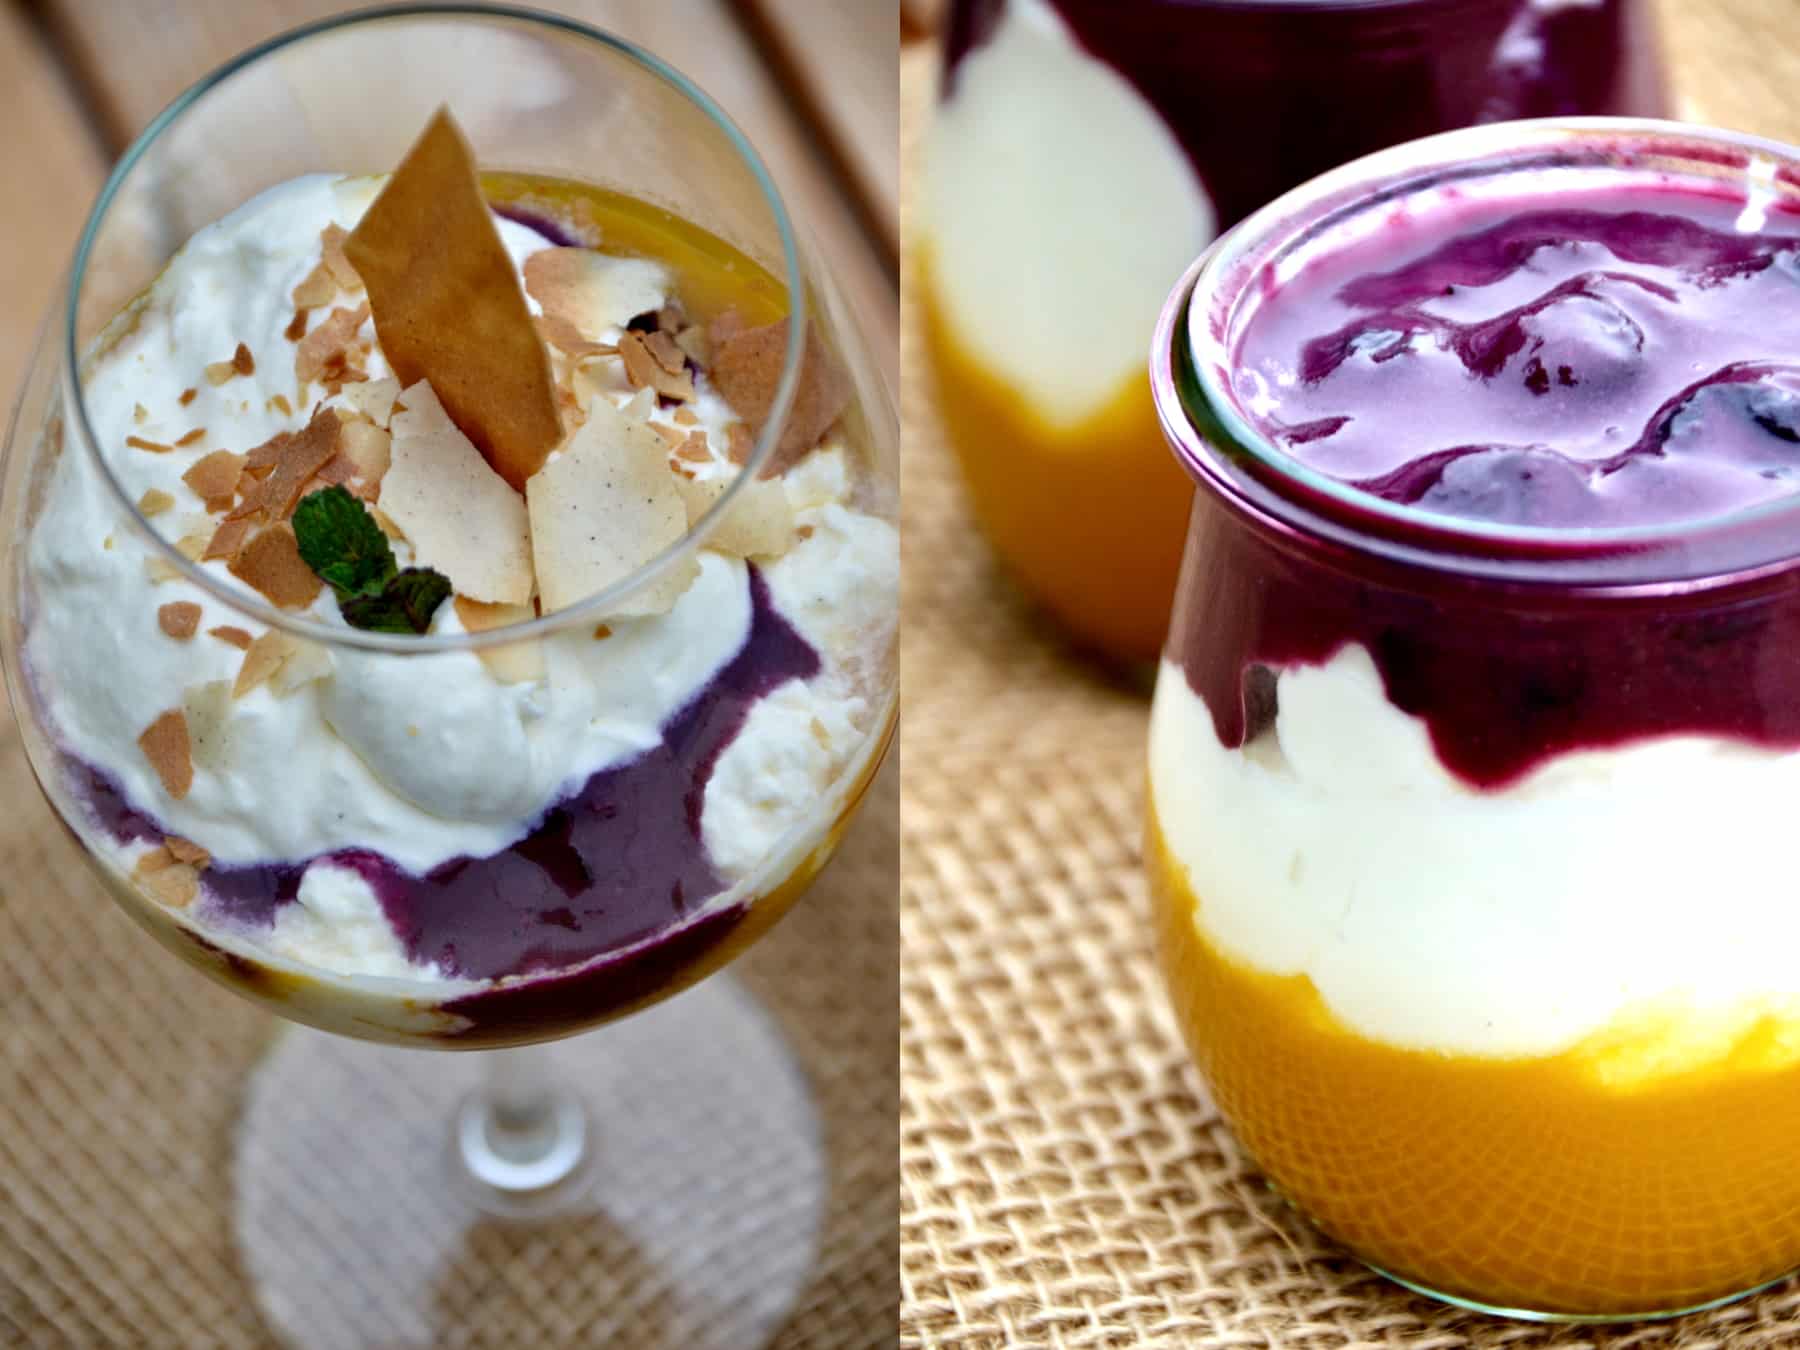 Bildcollage der Mango-Blaubeer Dessert Serviervariationen im Stilglas und Dessertglas - Mango-Blaubeer-Trifle